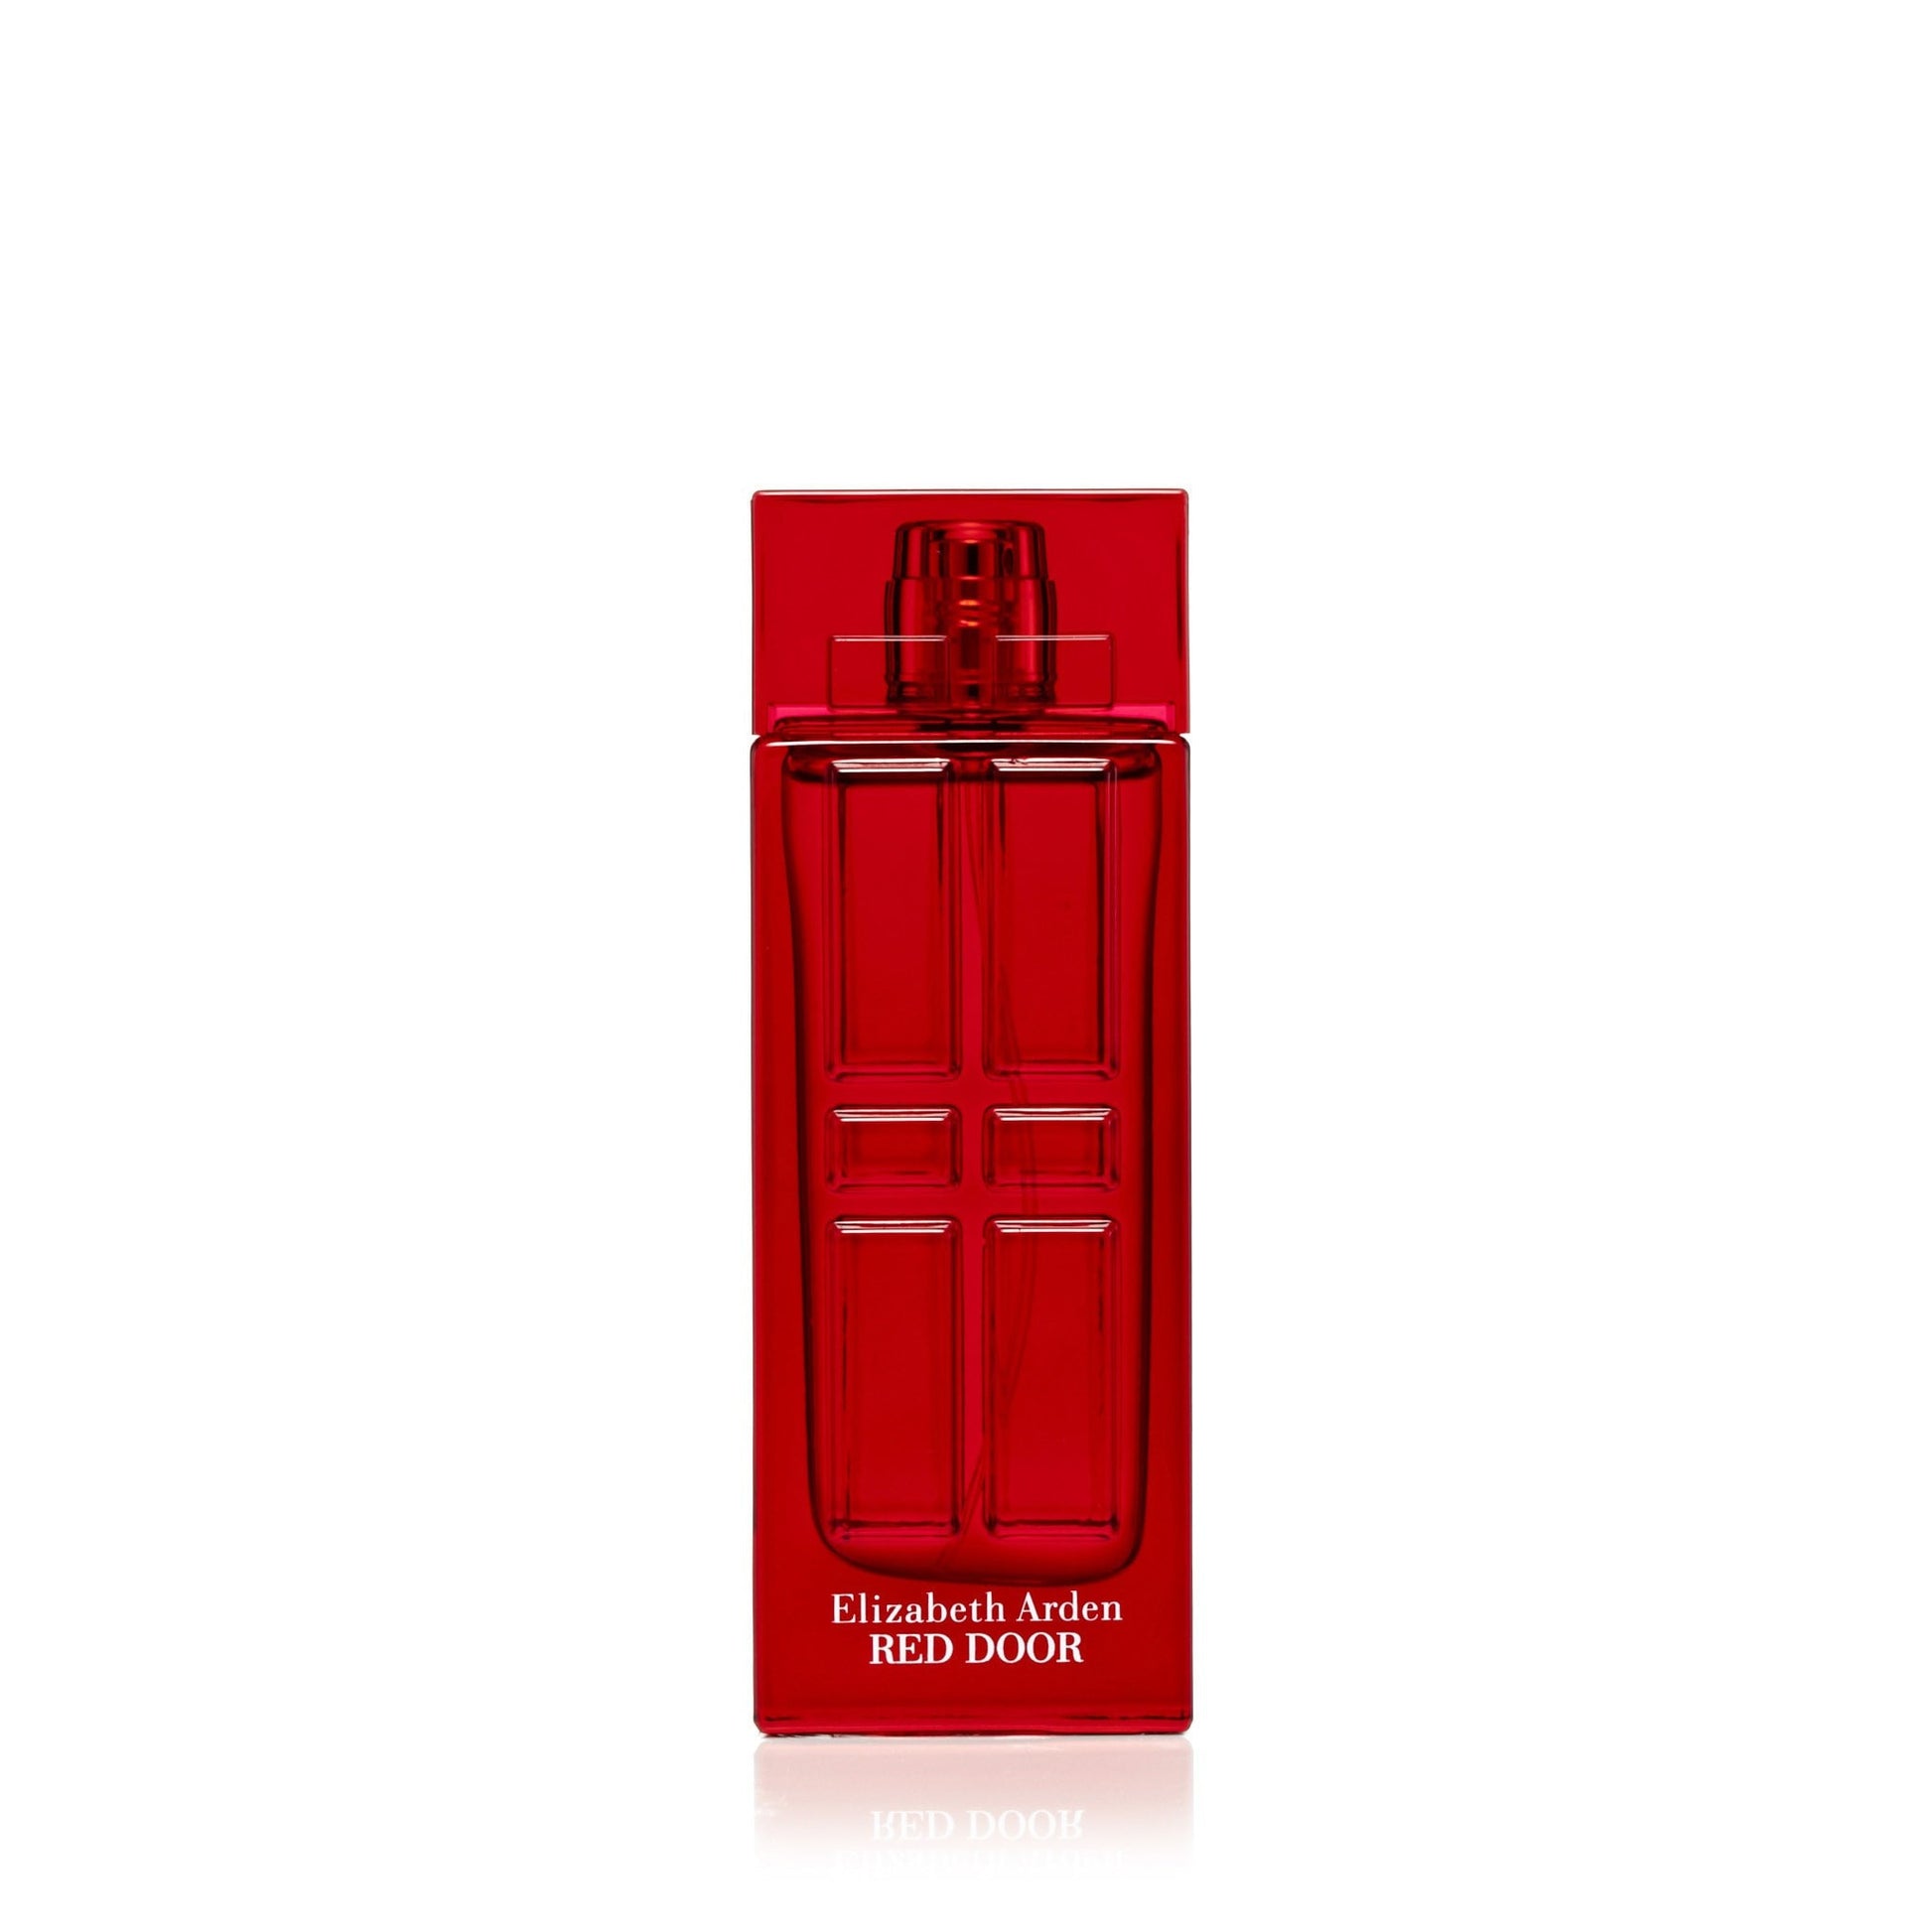 Red Door Eau de Toilette Spray for Women by Elizabeth Arden 1.7 oz. Click to open in modal